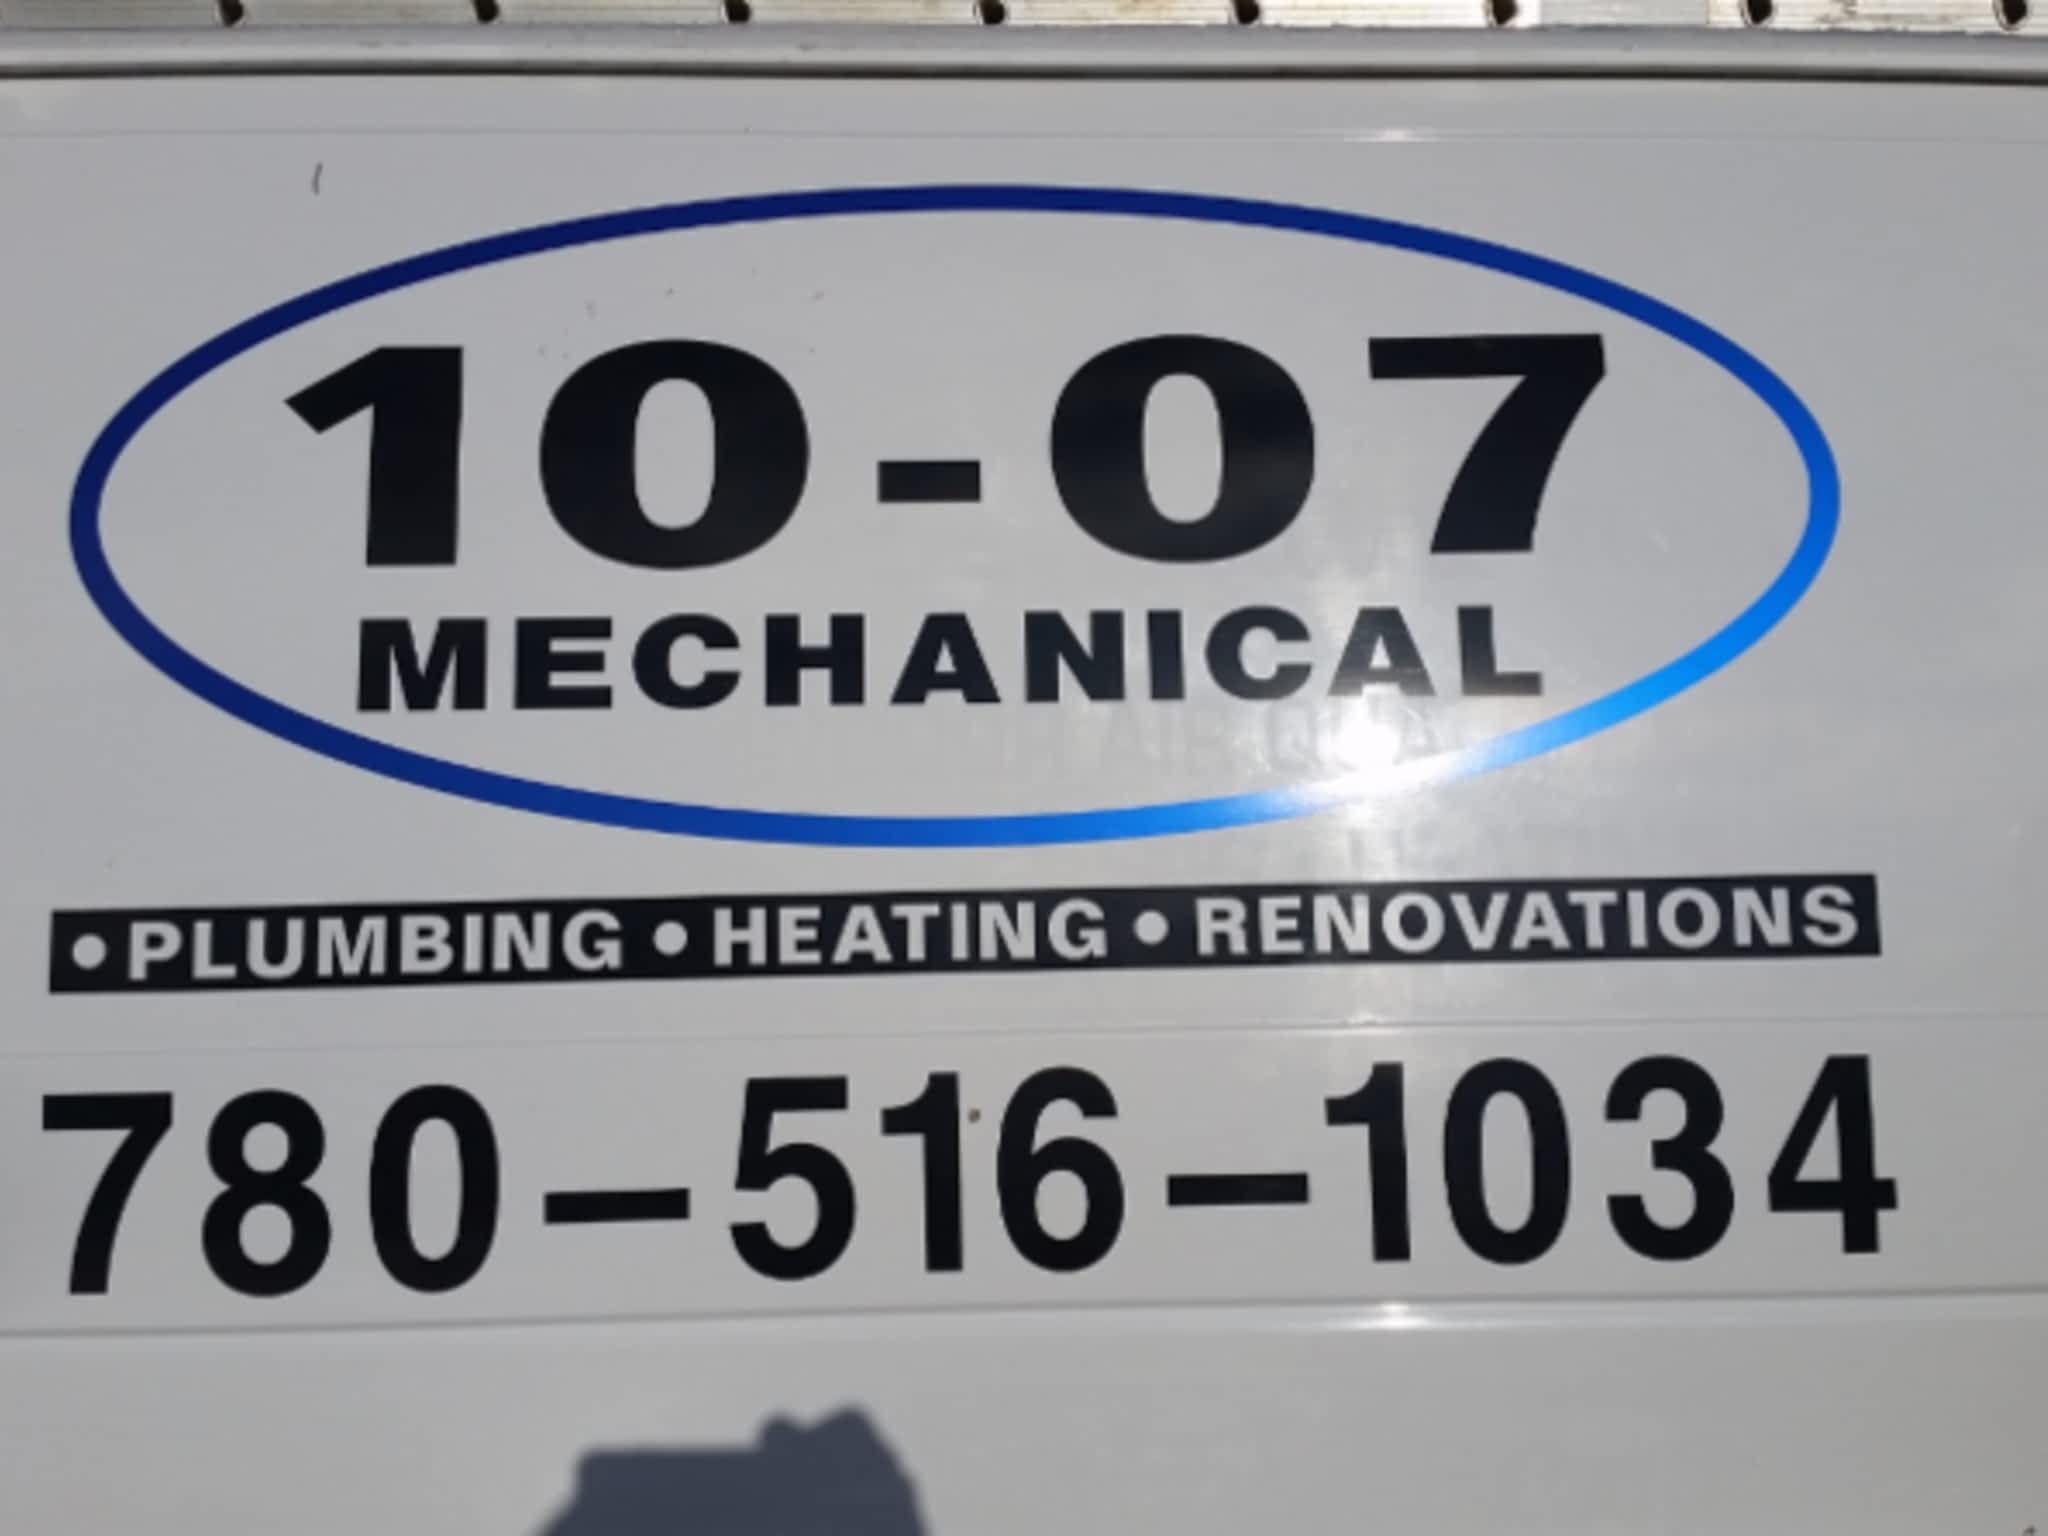 photo 10-07 Mechanical Plumbing & Heating